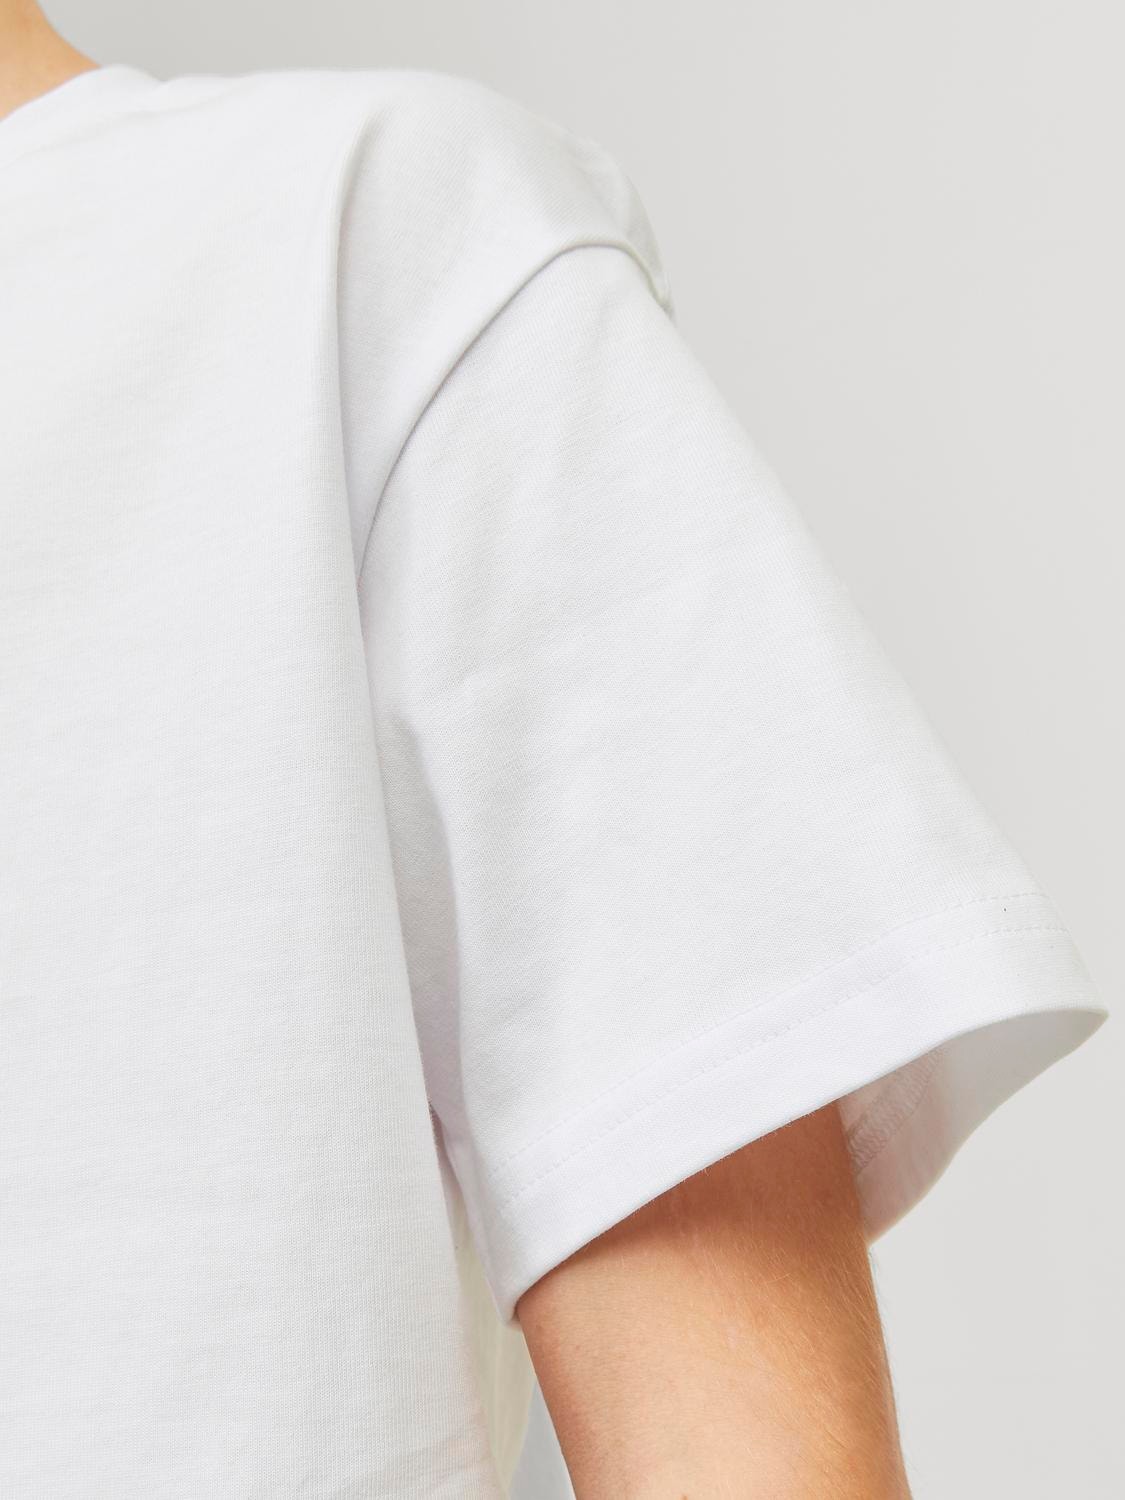 Jack & Jones Printet T-shirt Til drenge -Bright White - 12242827